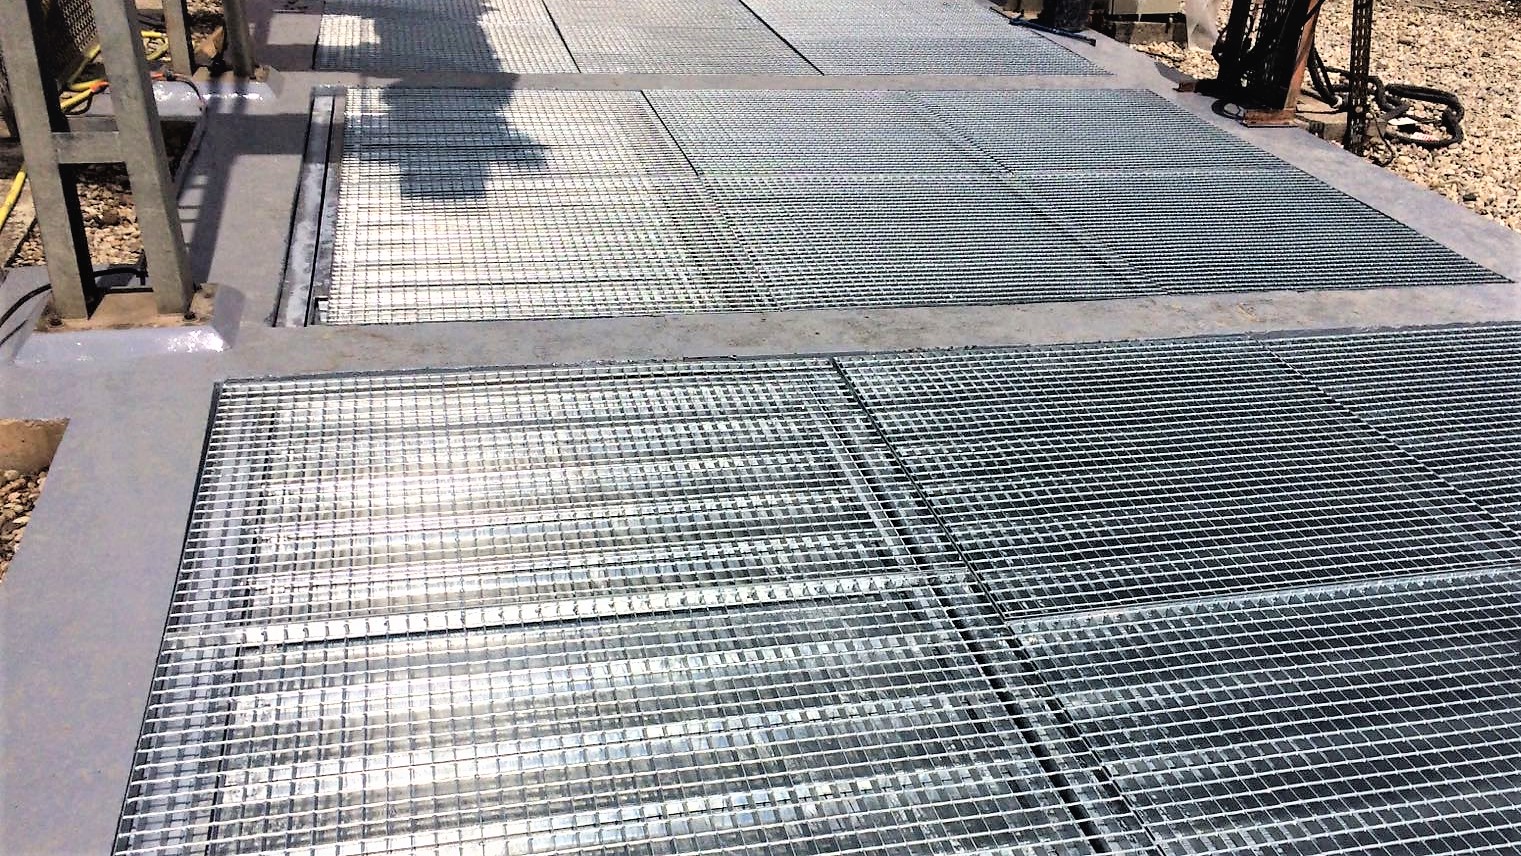 03-pose des caillebotis sur les volets coupe feu EXTICOV sur la fosse transformateur EDF - 2017